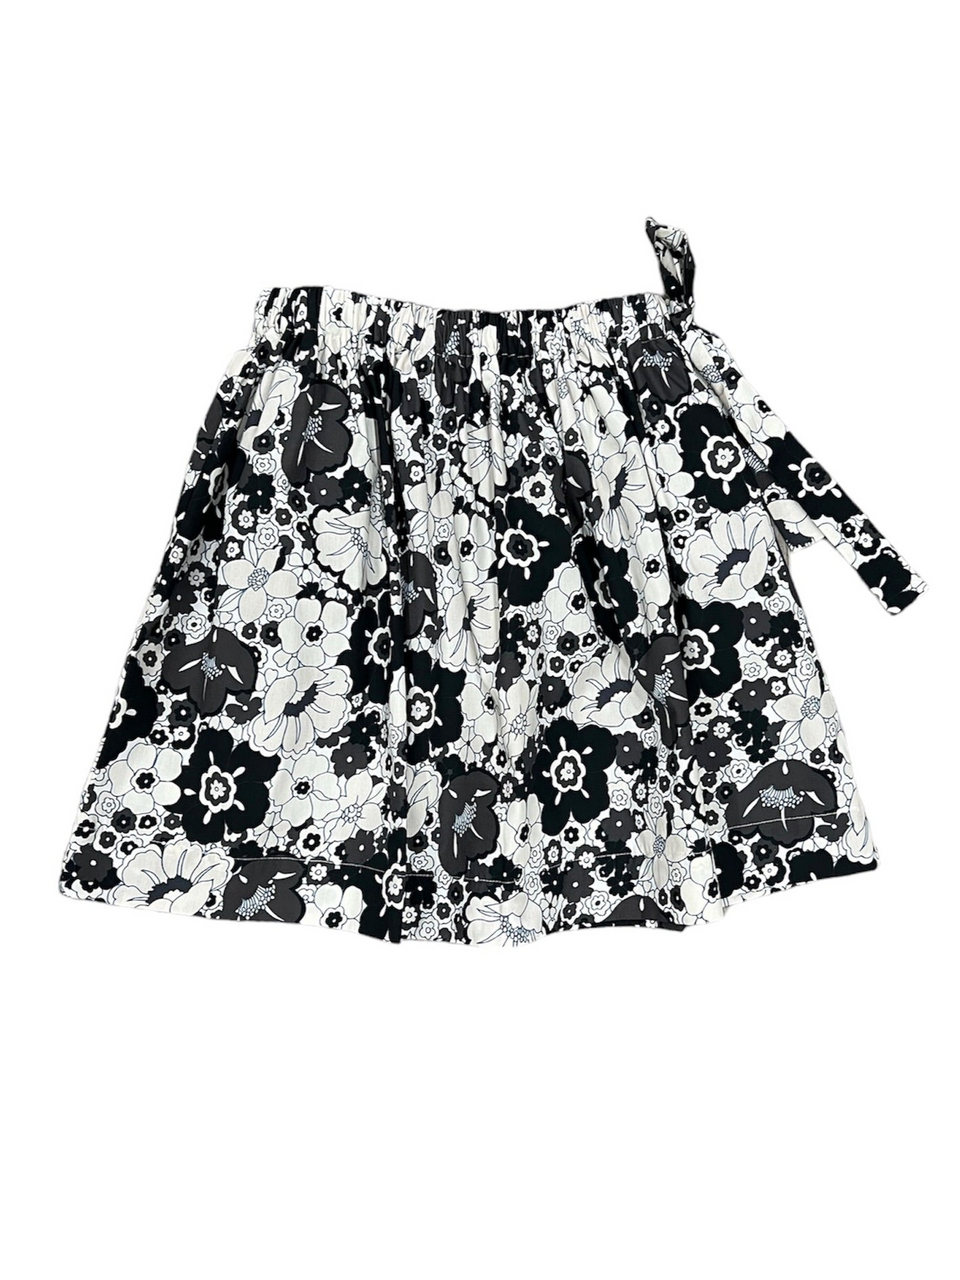 Be For All Black/White Floral Skirt